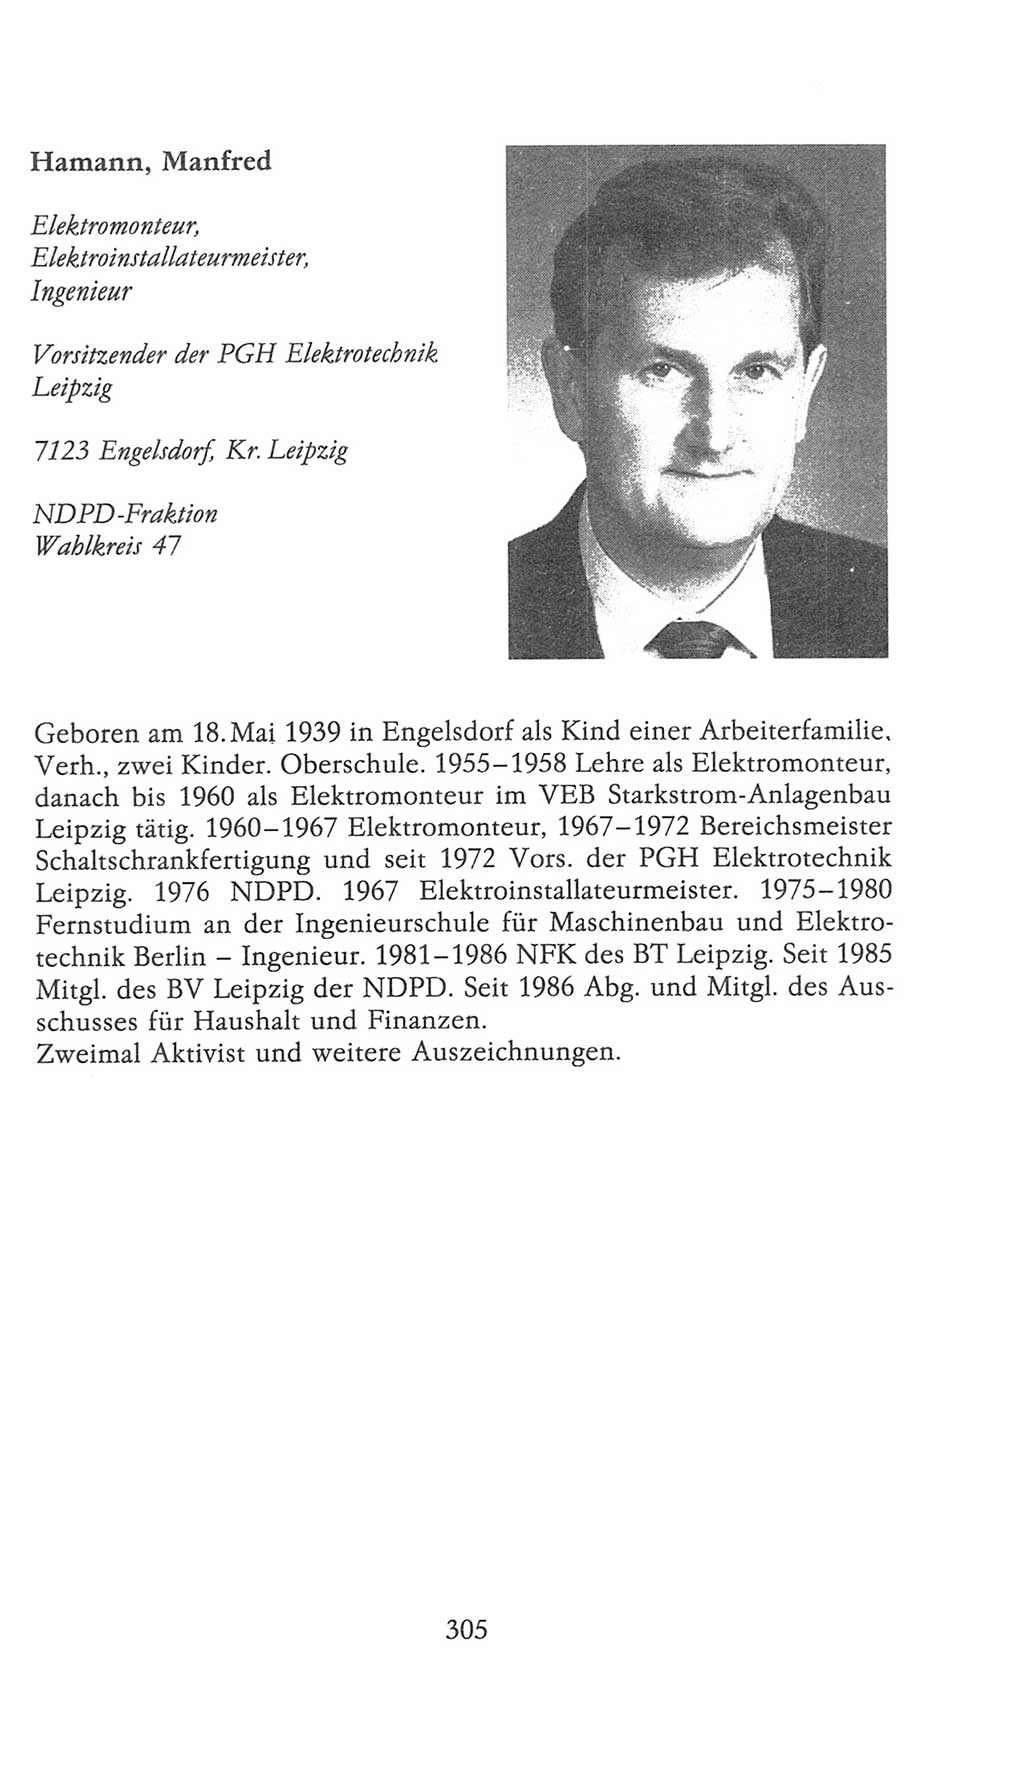 Volkskammer (VK) der Deutschen Demokratischen Republik (DDR), 9. Wahlperiode 1986-1990, Seite 305 (VK. DDR 9. WP. 1986-1990, S. 305)